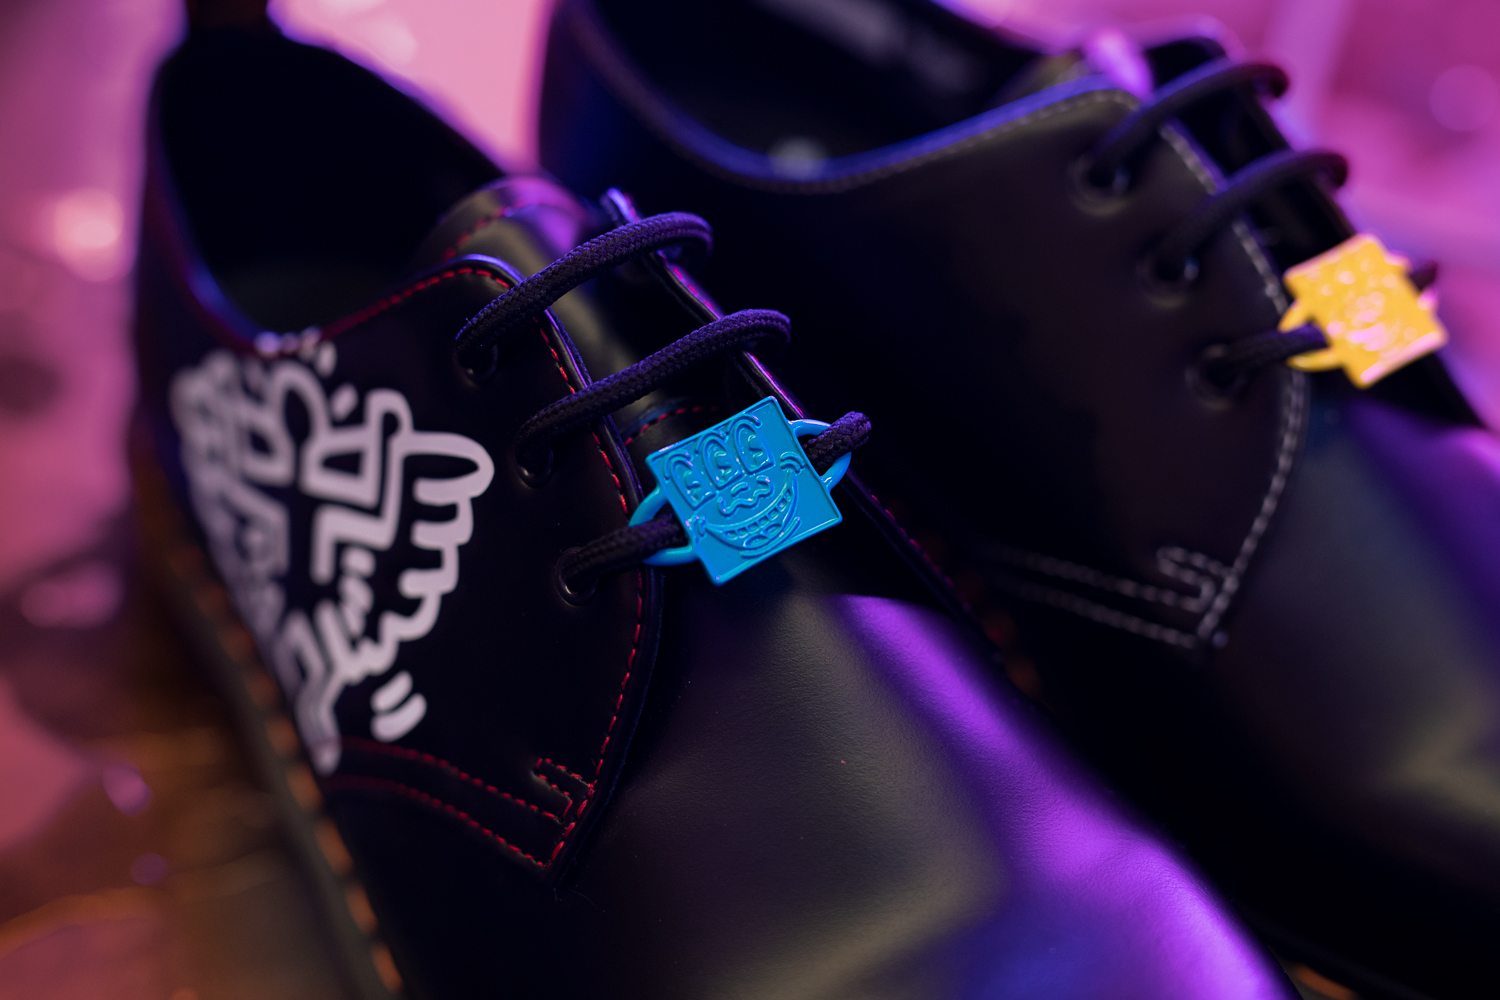 Les personnages de Keith Haring s'invitent sur les nouvelles chaussures Dr. Martens